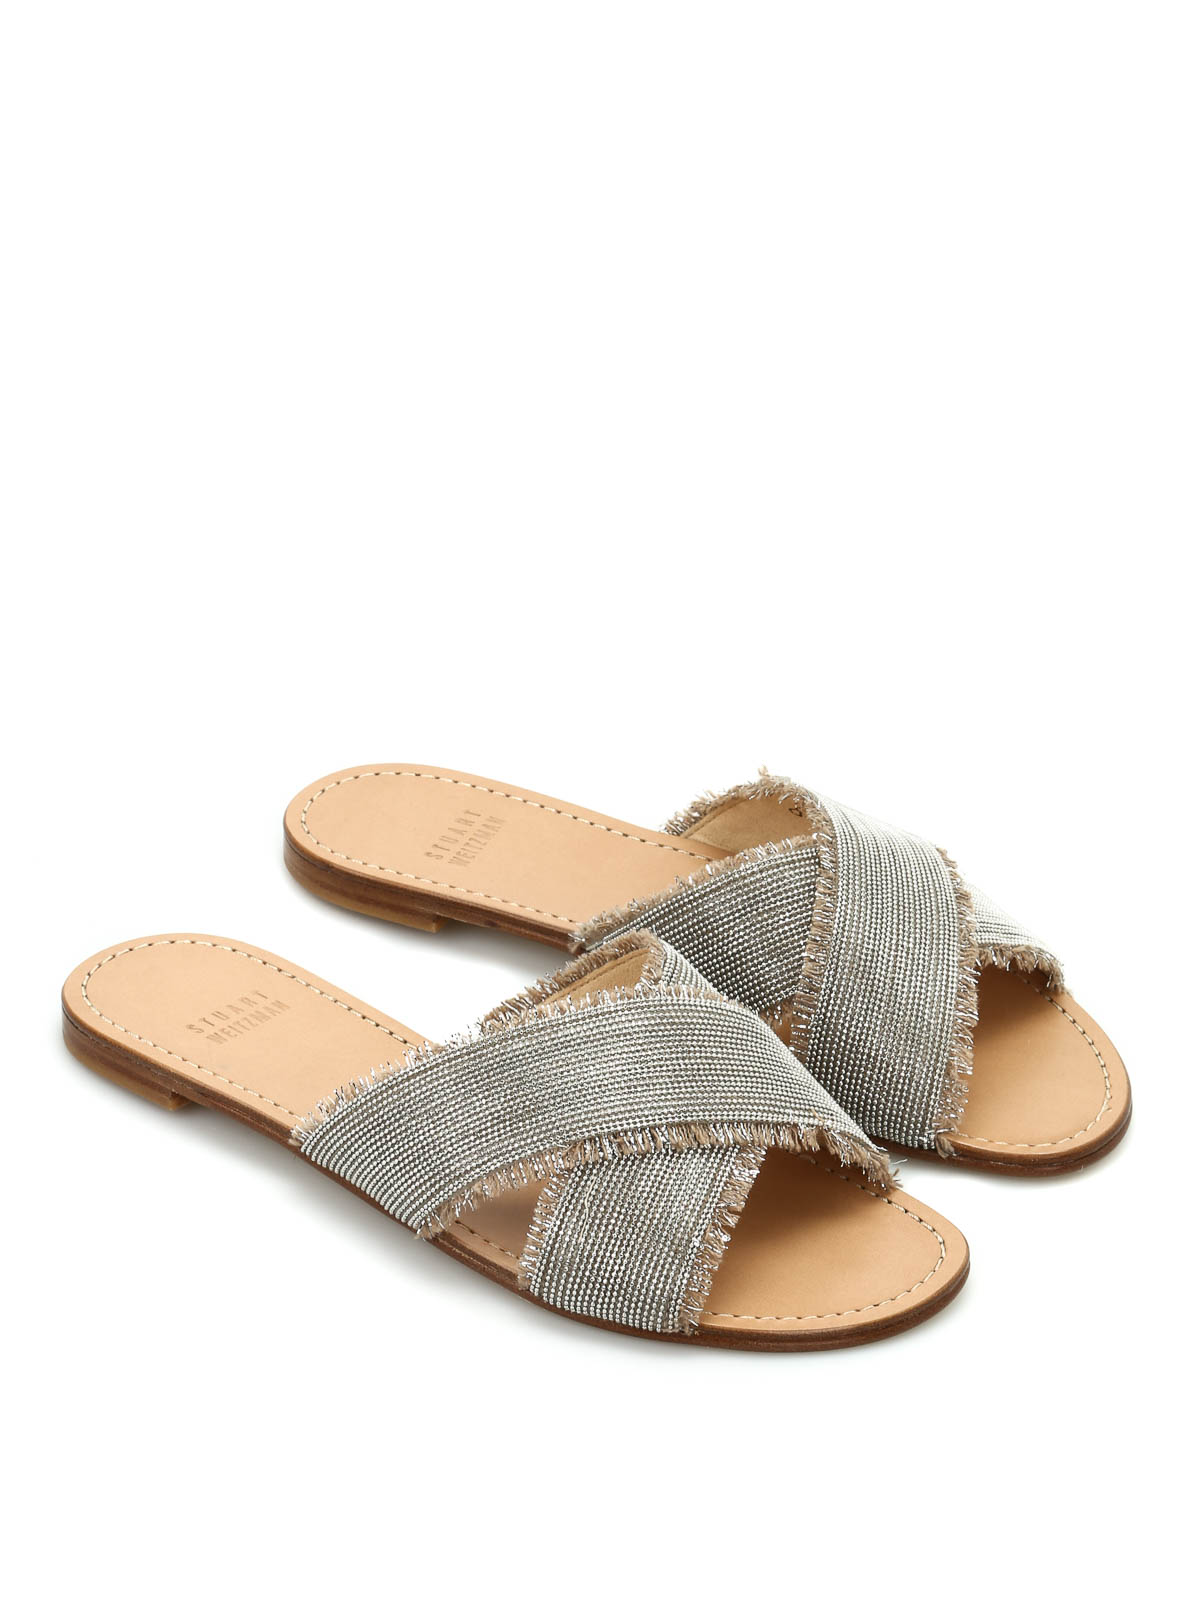 Stuart Weitzman Flat Sandals Sale, 59% OFF | edetaria.com